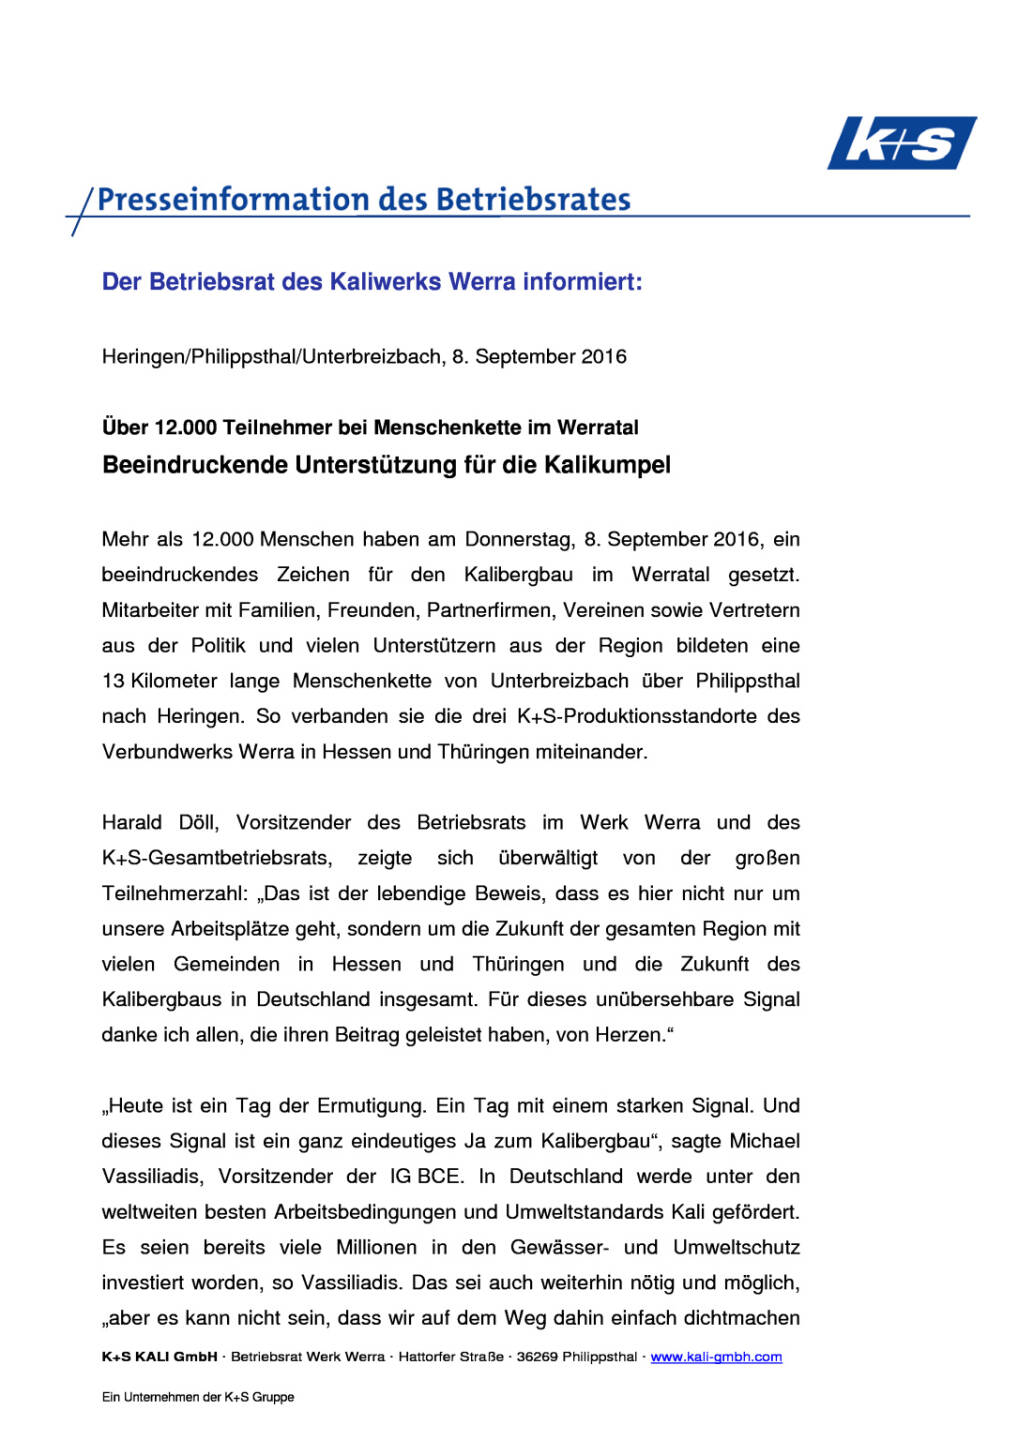 K+S AG Betriebsrat: Menschenkette im Werratal, Seite 1/4, komplettes Dokument unter http://boerse-social.com/static/uploads/file_1751_ks_ag_betriebsrat_menschenkette_im_werratal.pdf